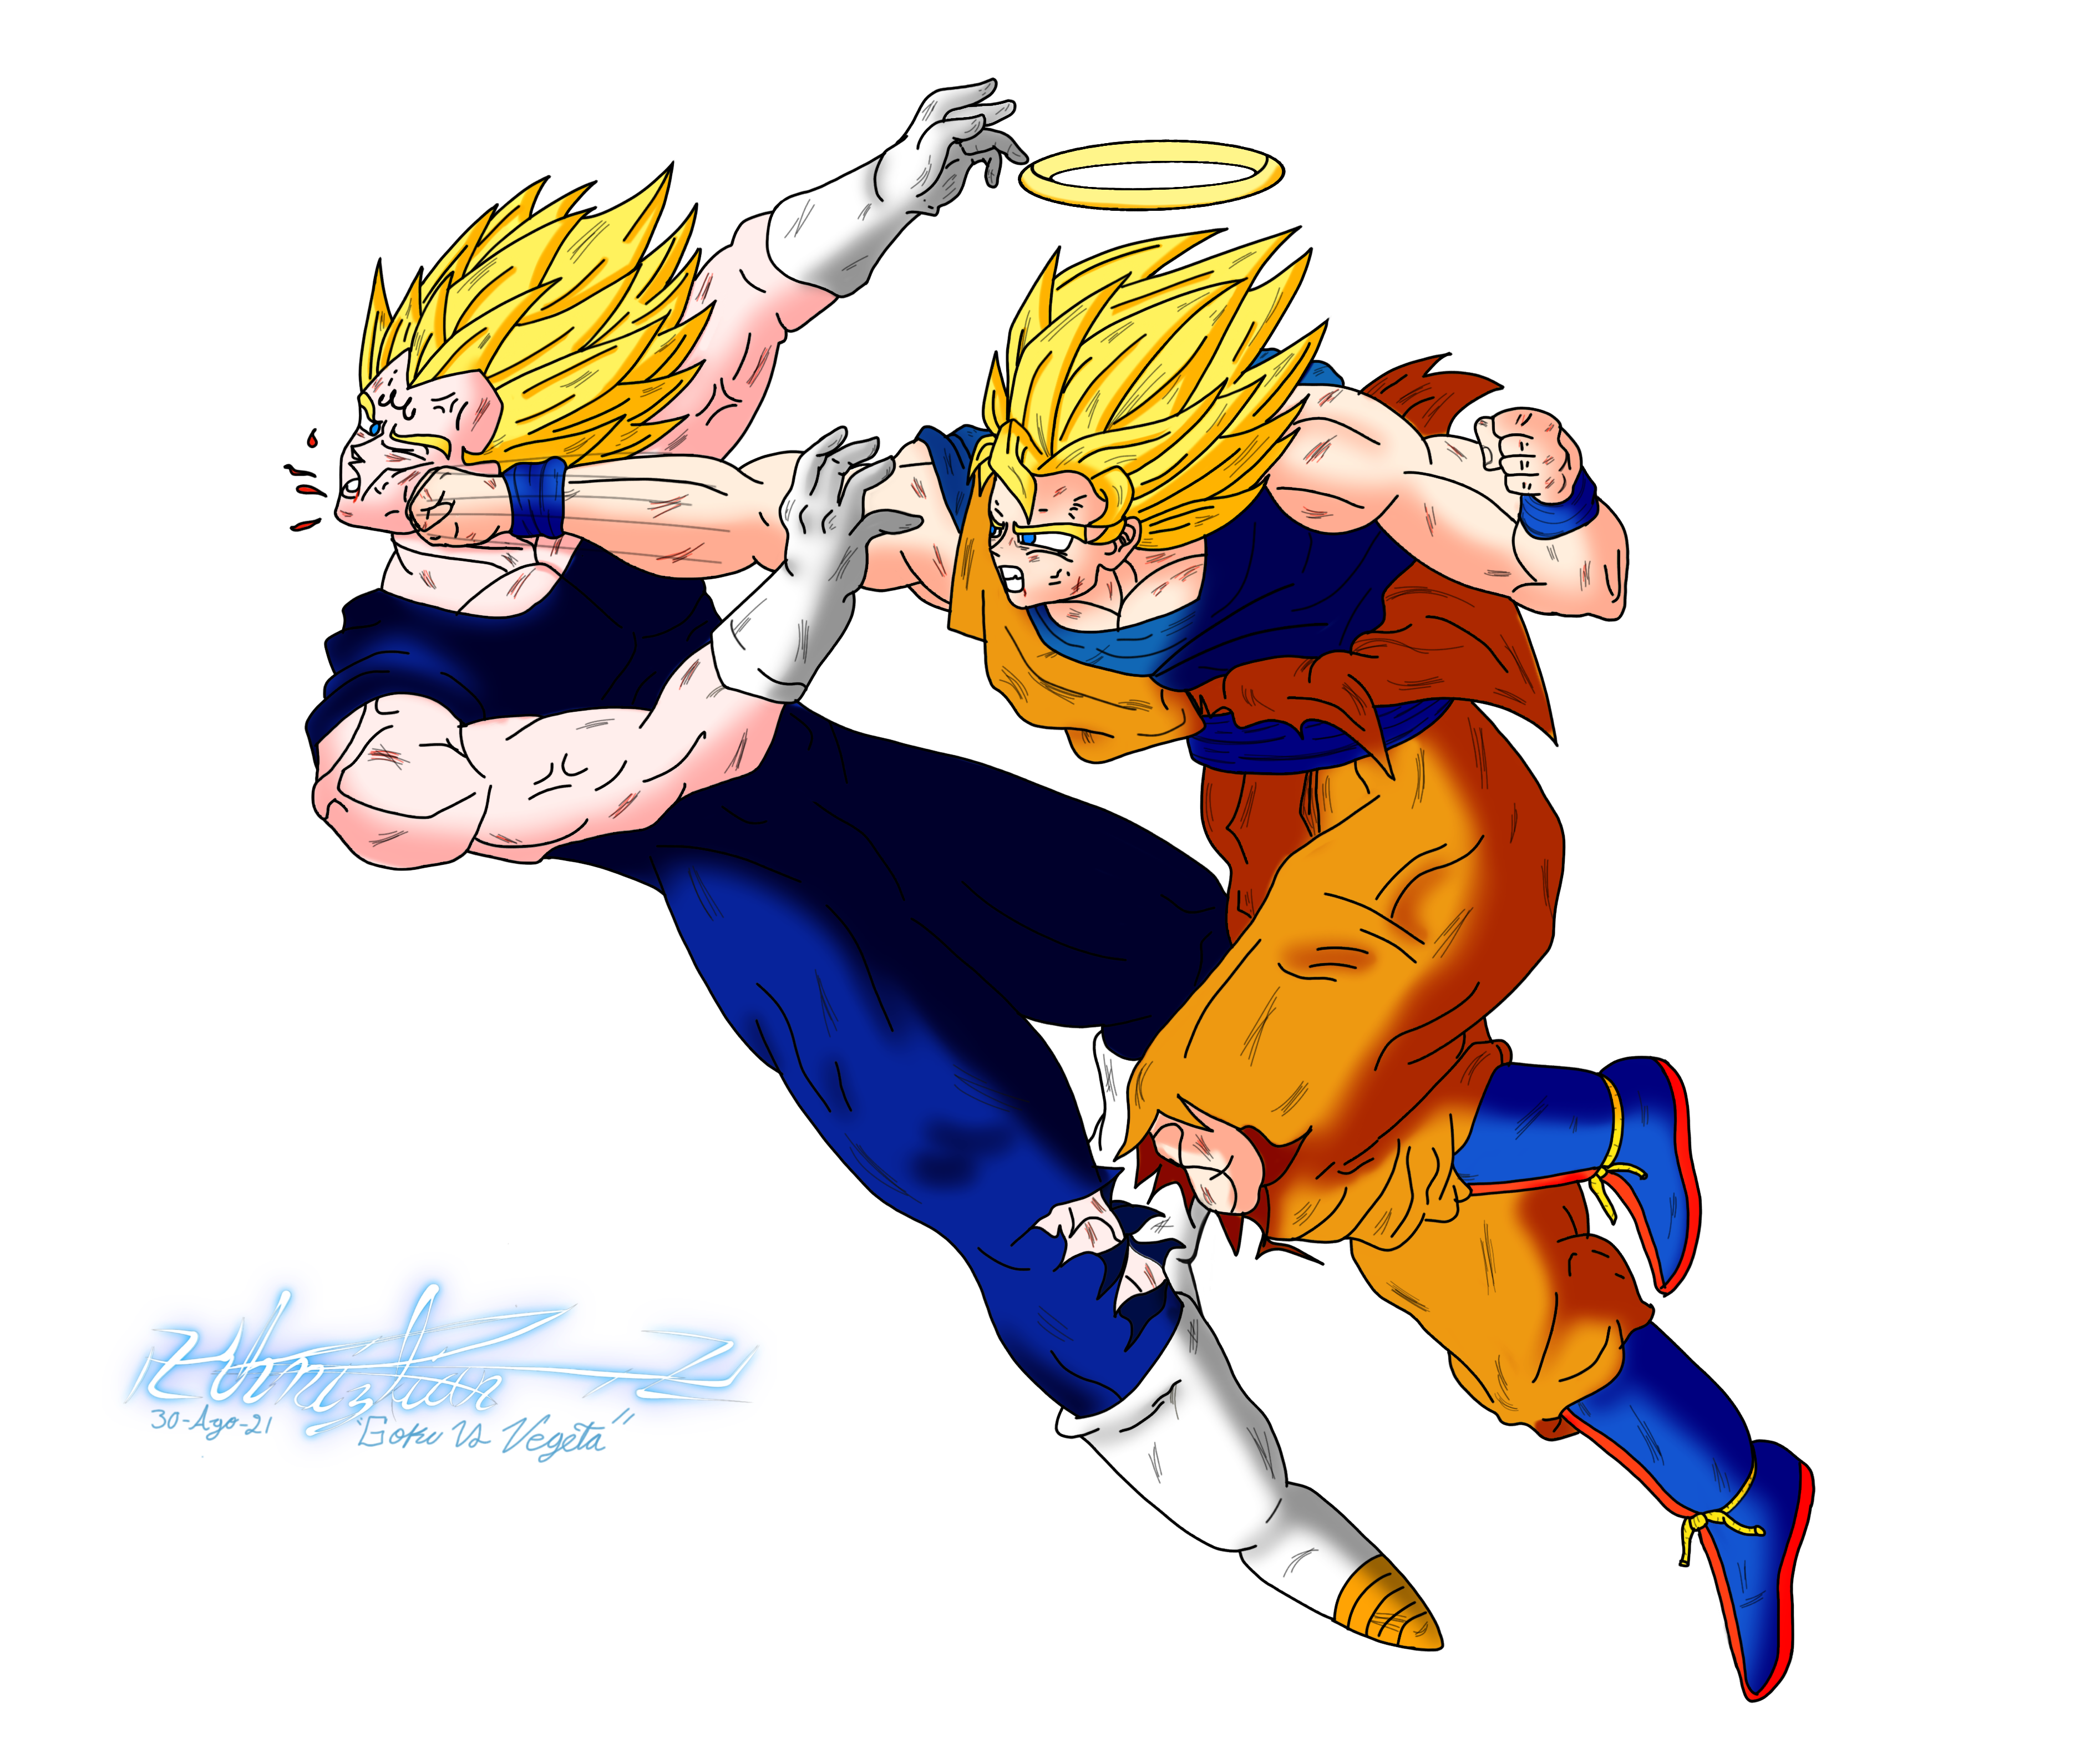 Goku vs Vegeta by khriz10 on DeviantArt